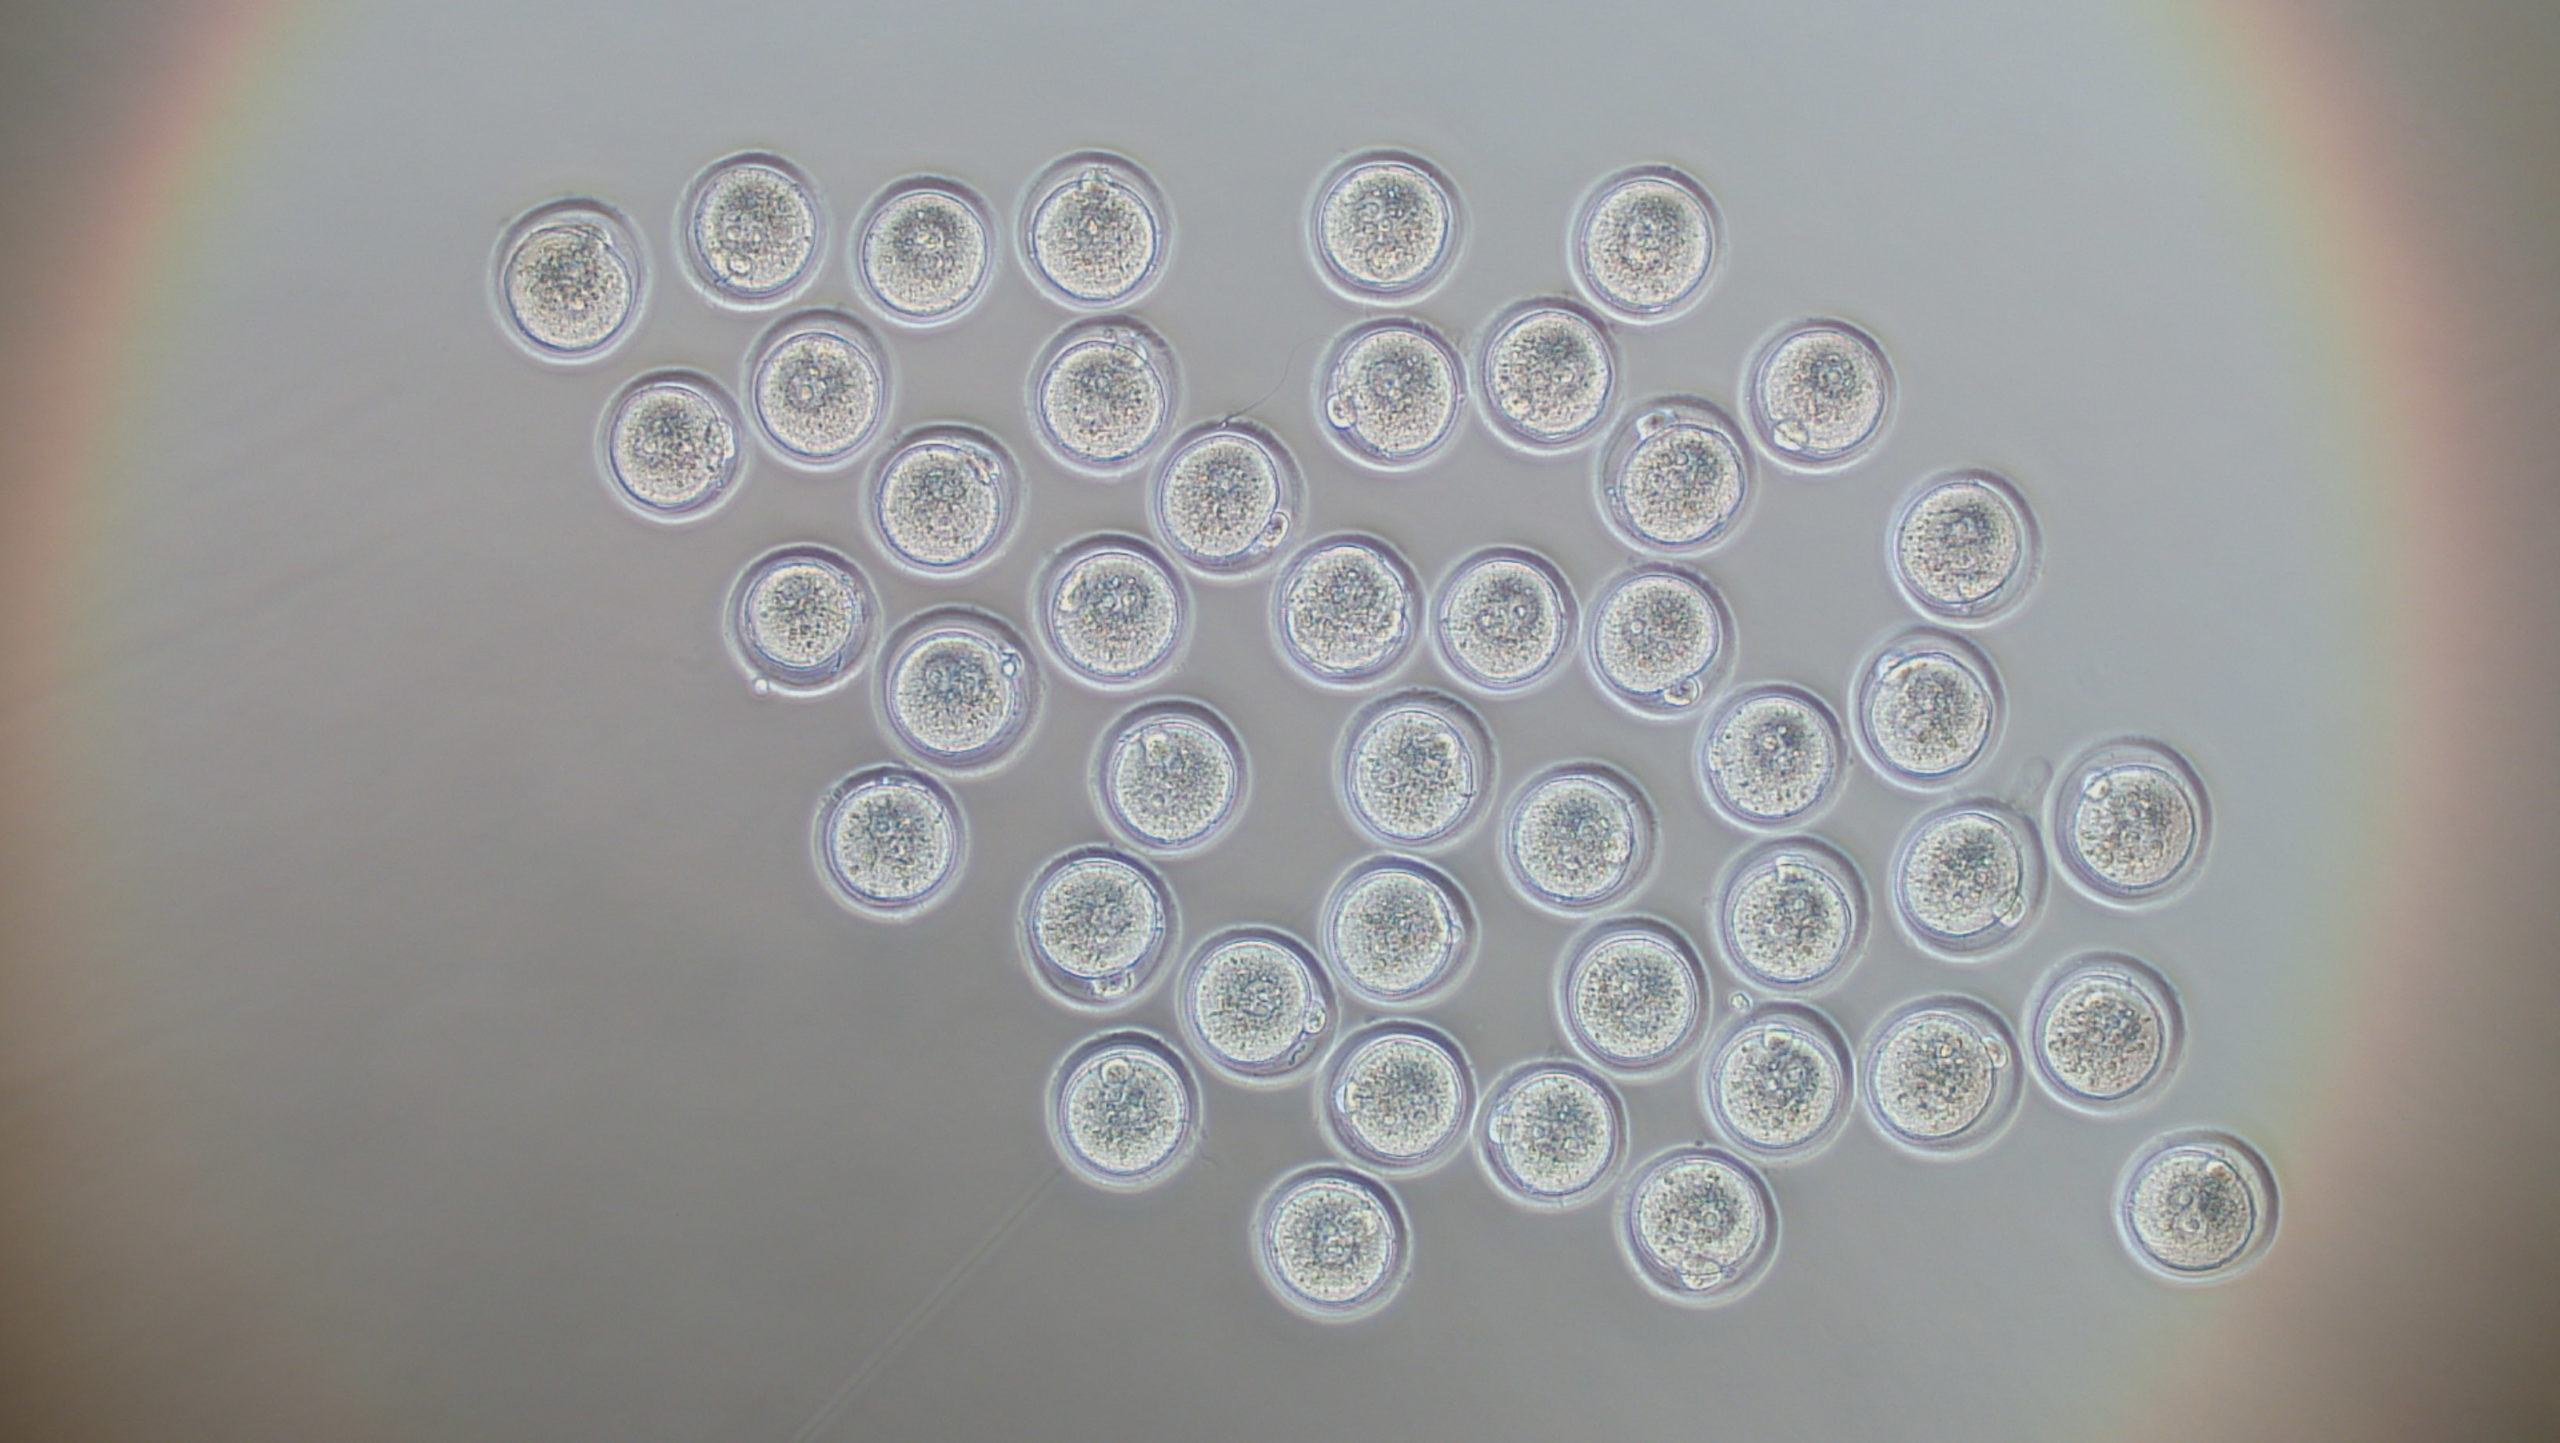 マウス ラット凍結受精卵 凍結胚 生殖工学関連製品 生命の進化と多様性を考えるアーク リソース